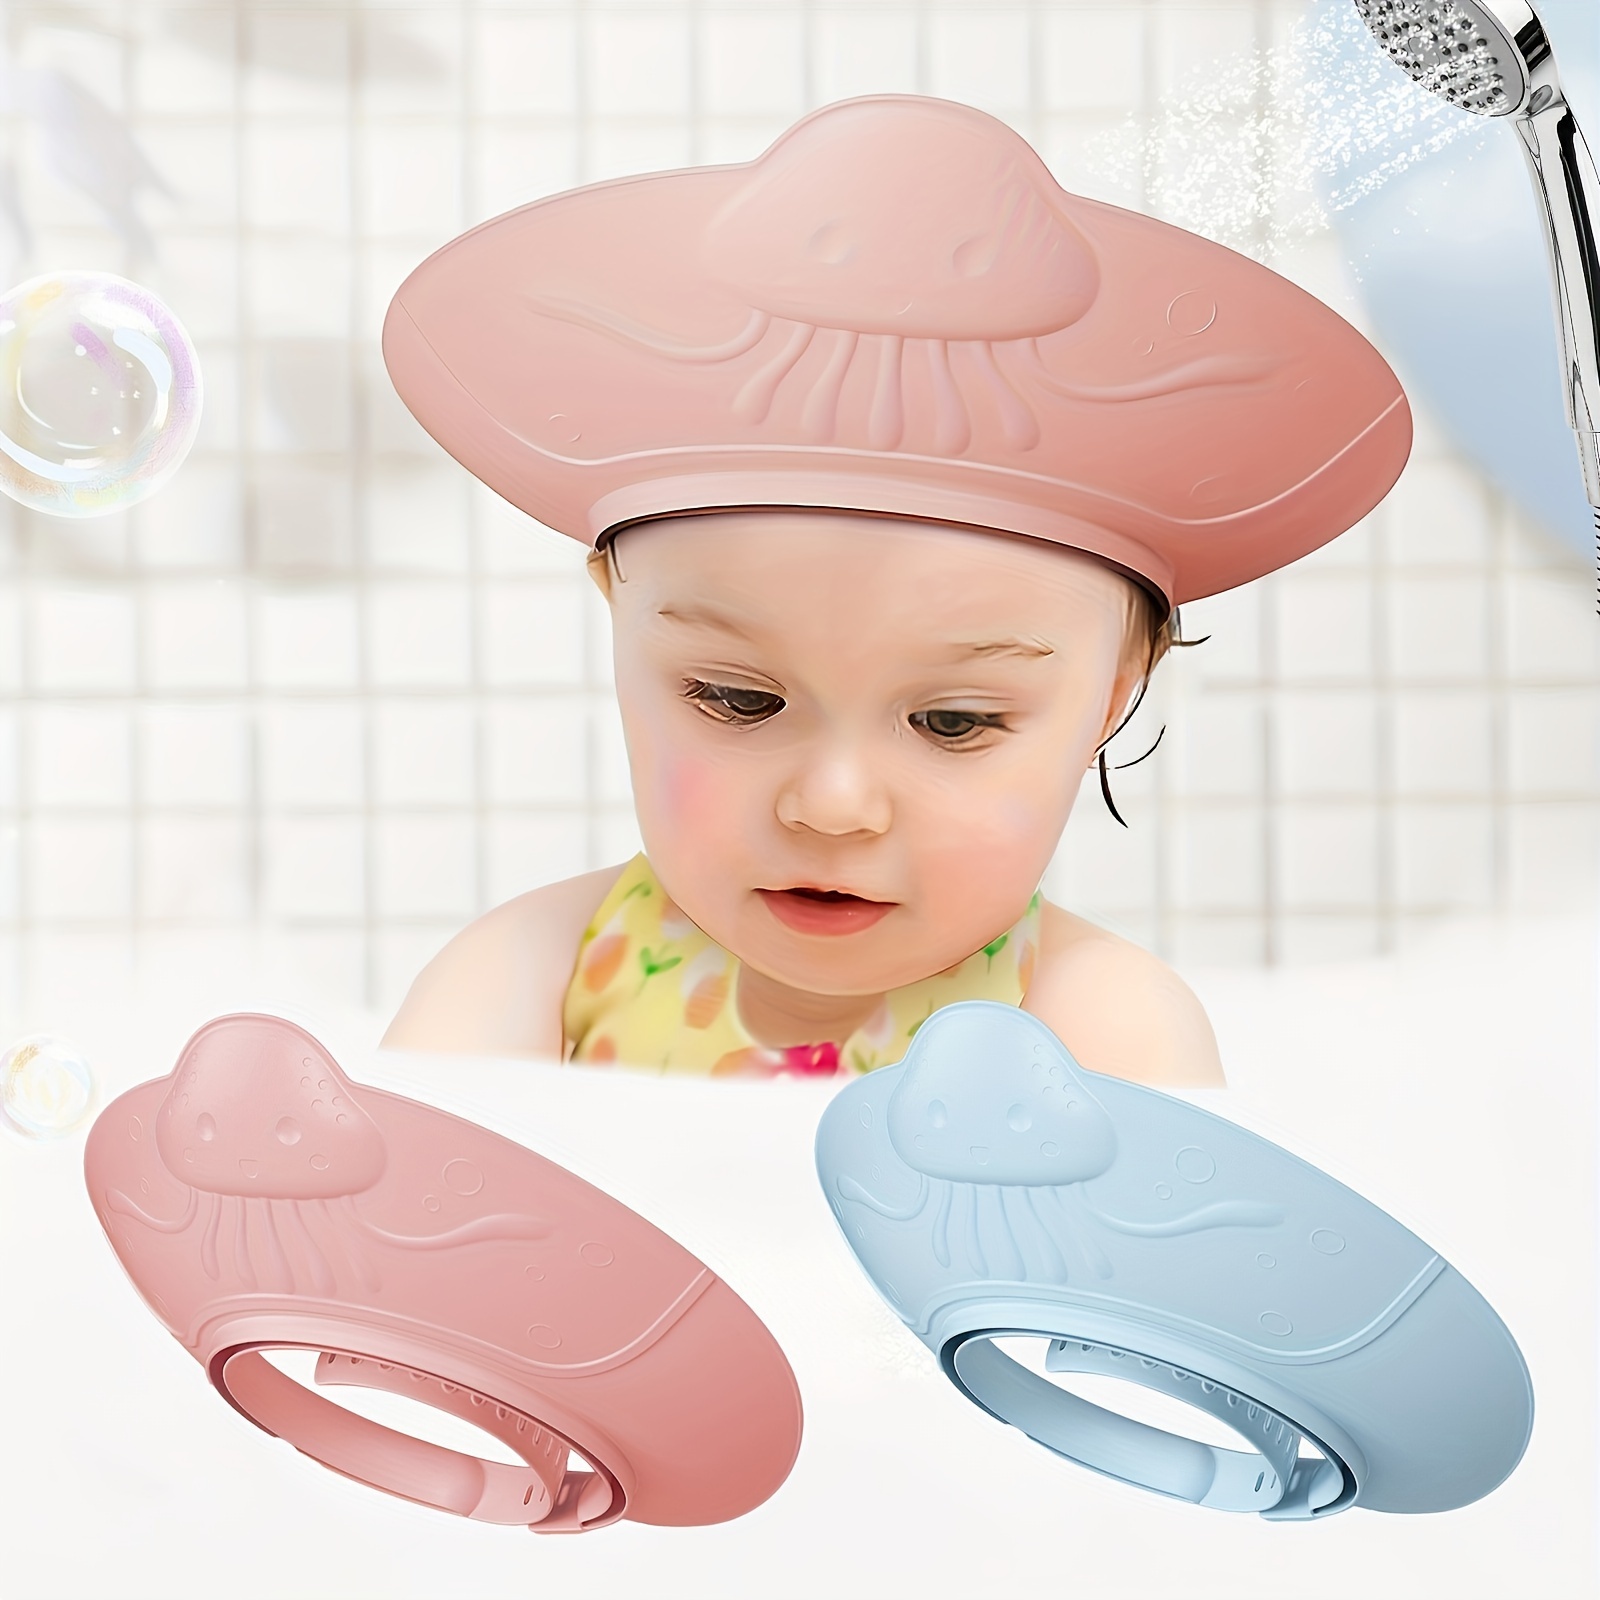  Gorro de ducha para bebé, impermeable, para niños, niñas, niños,  protege las orejas y los ojos. Corona de baño de silicona ajustable. : Bebés